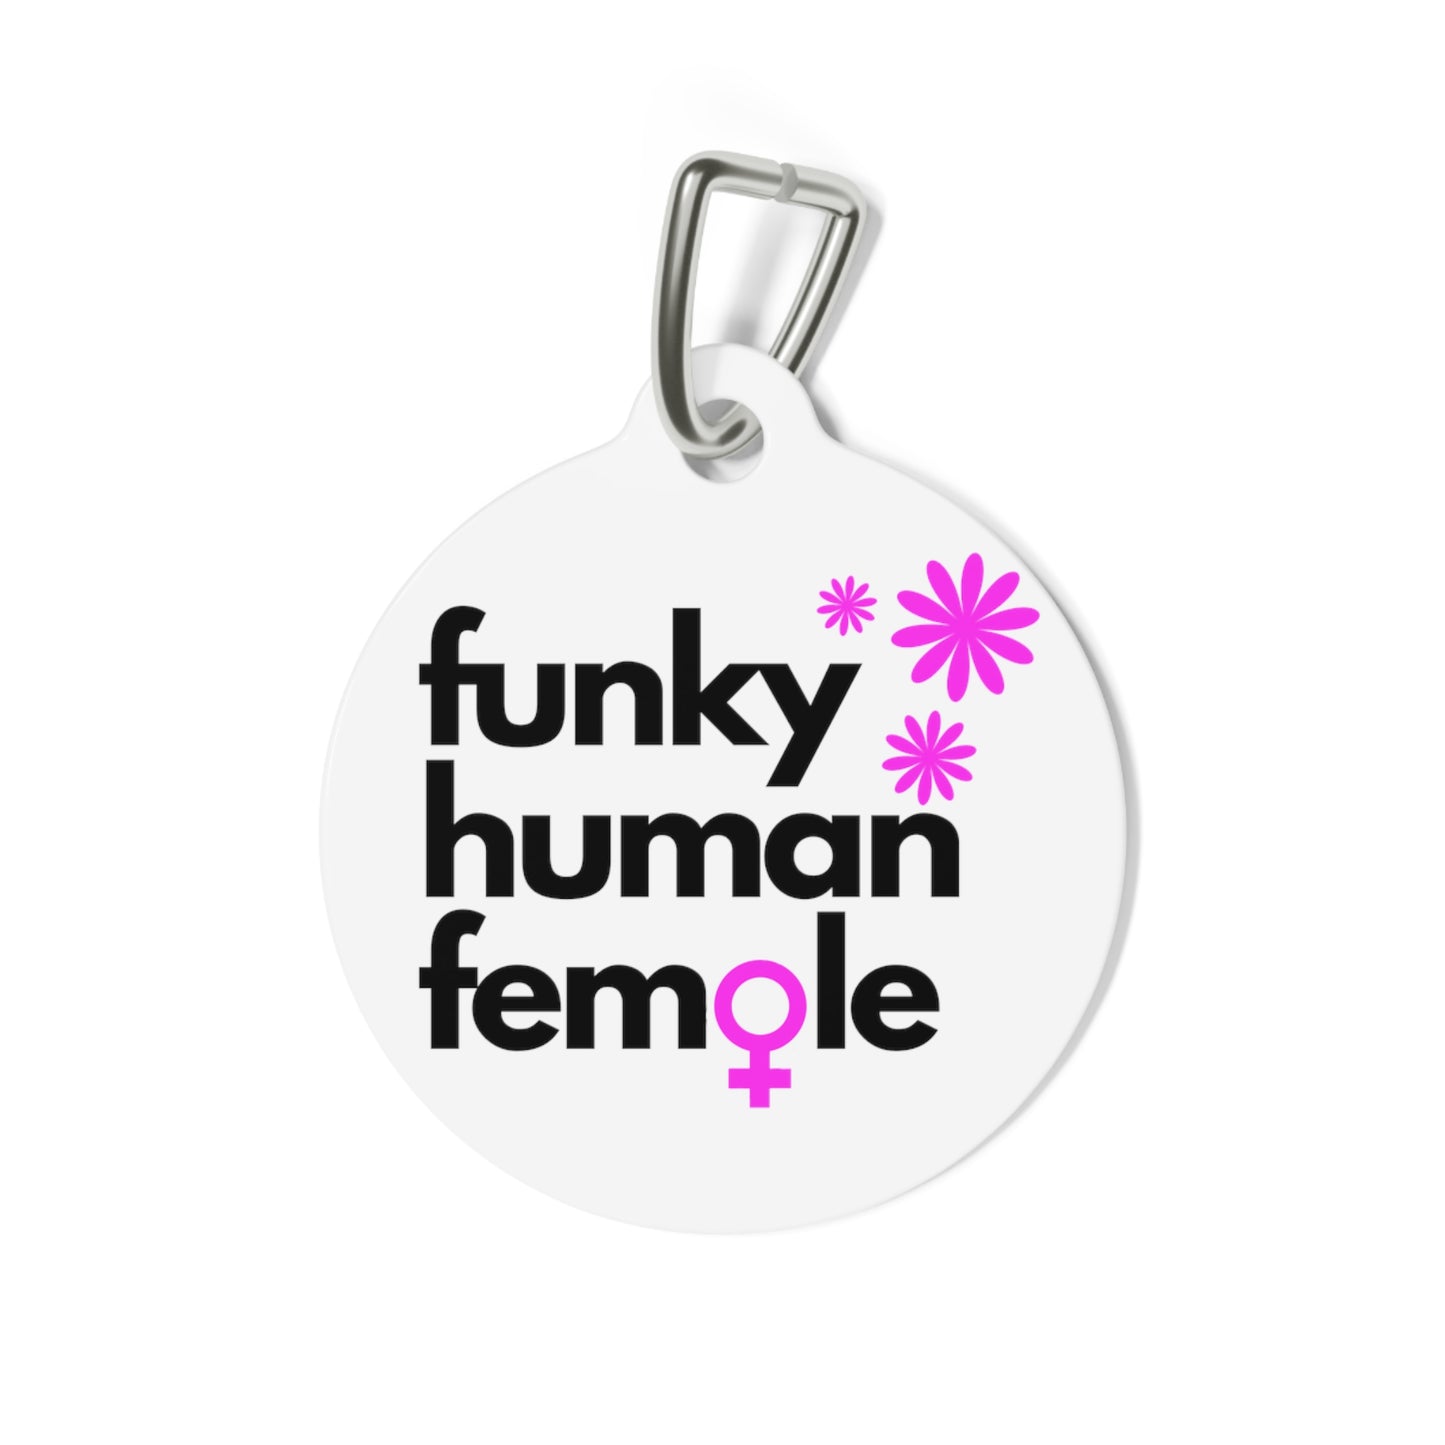 Funky Human Female White Metal Keychain